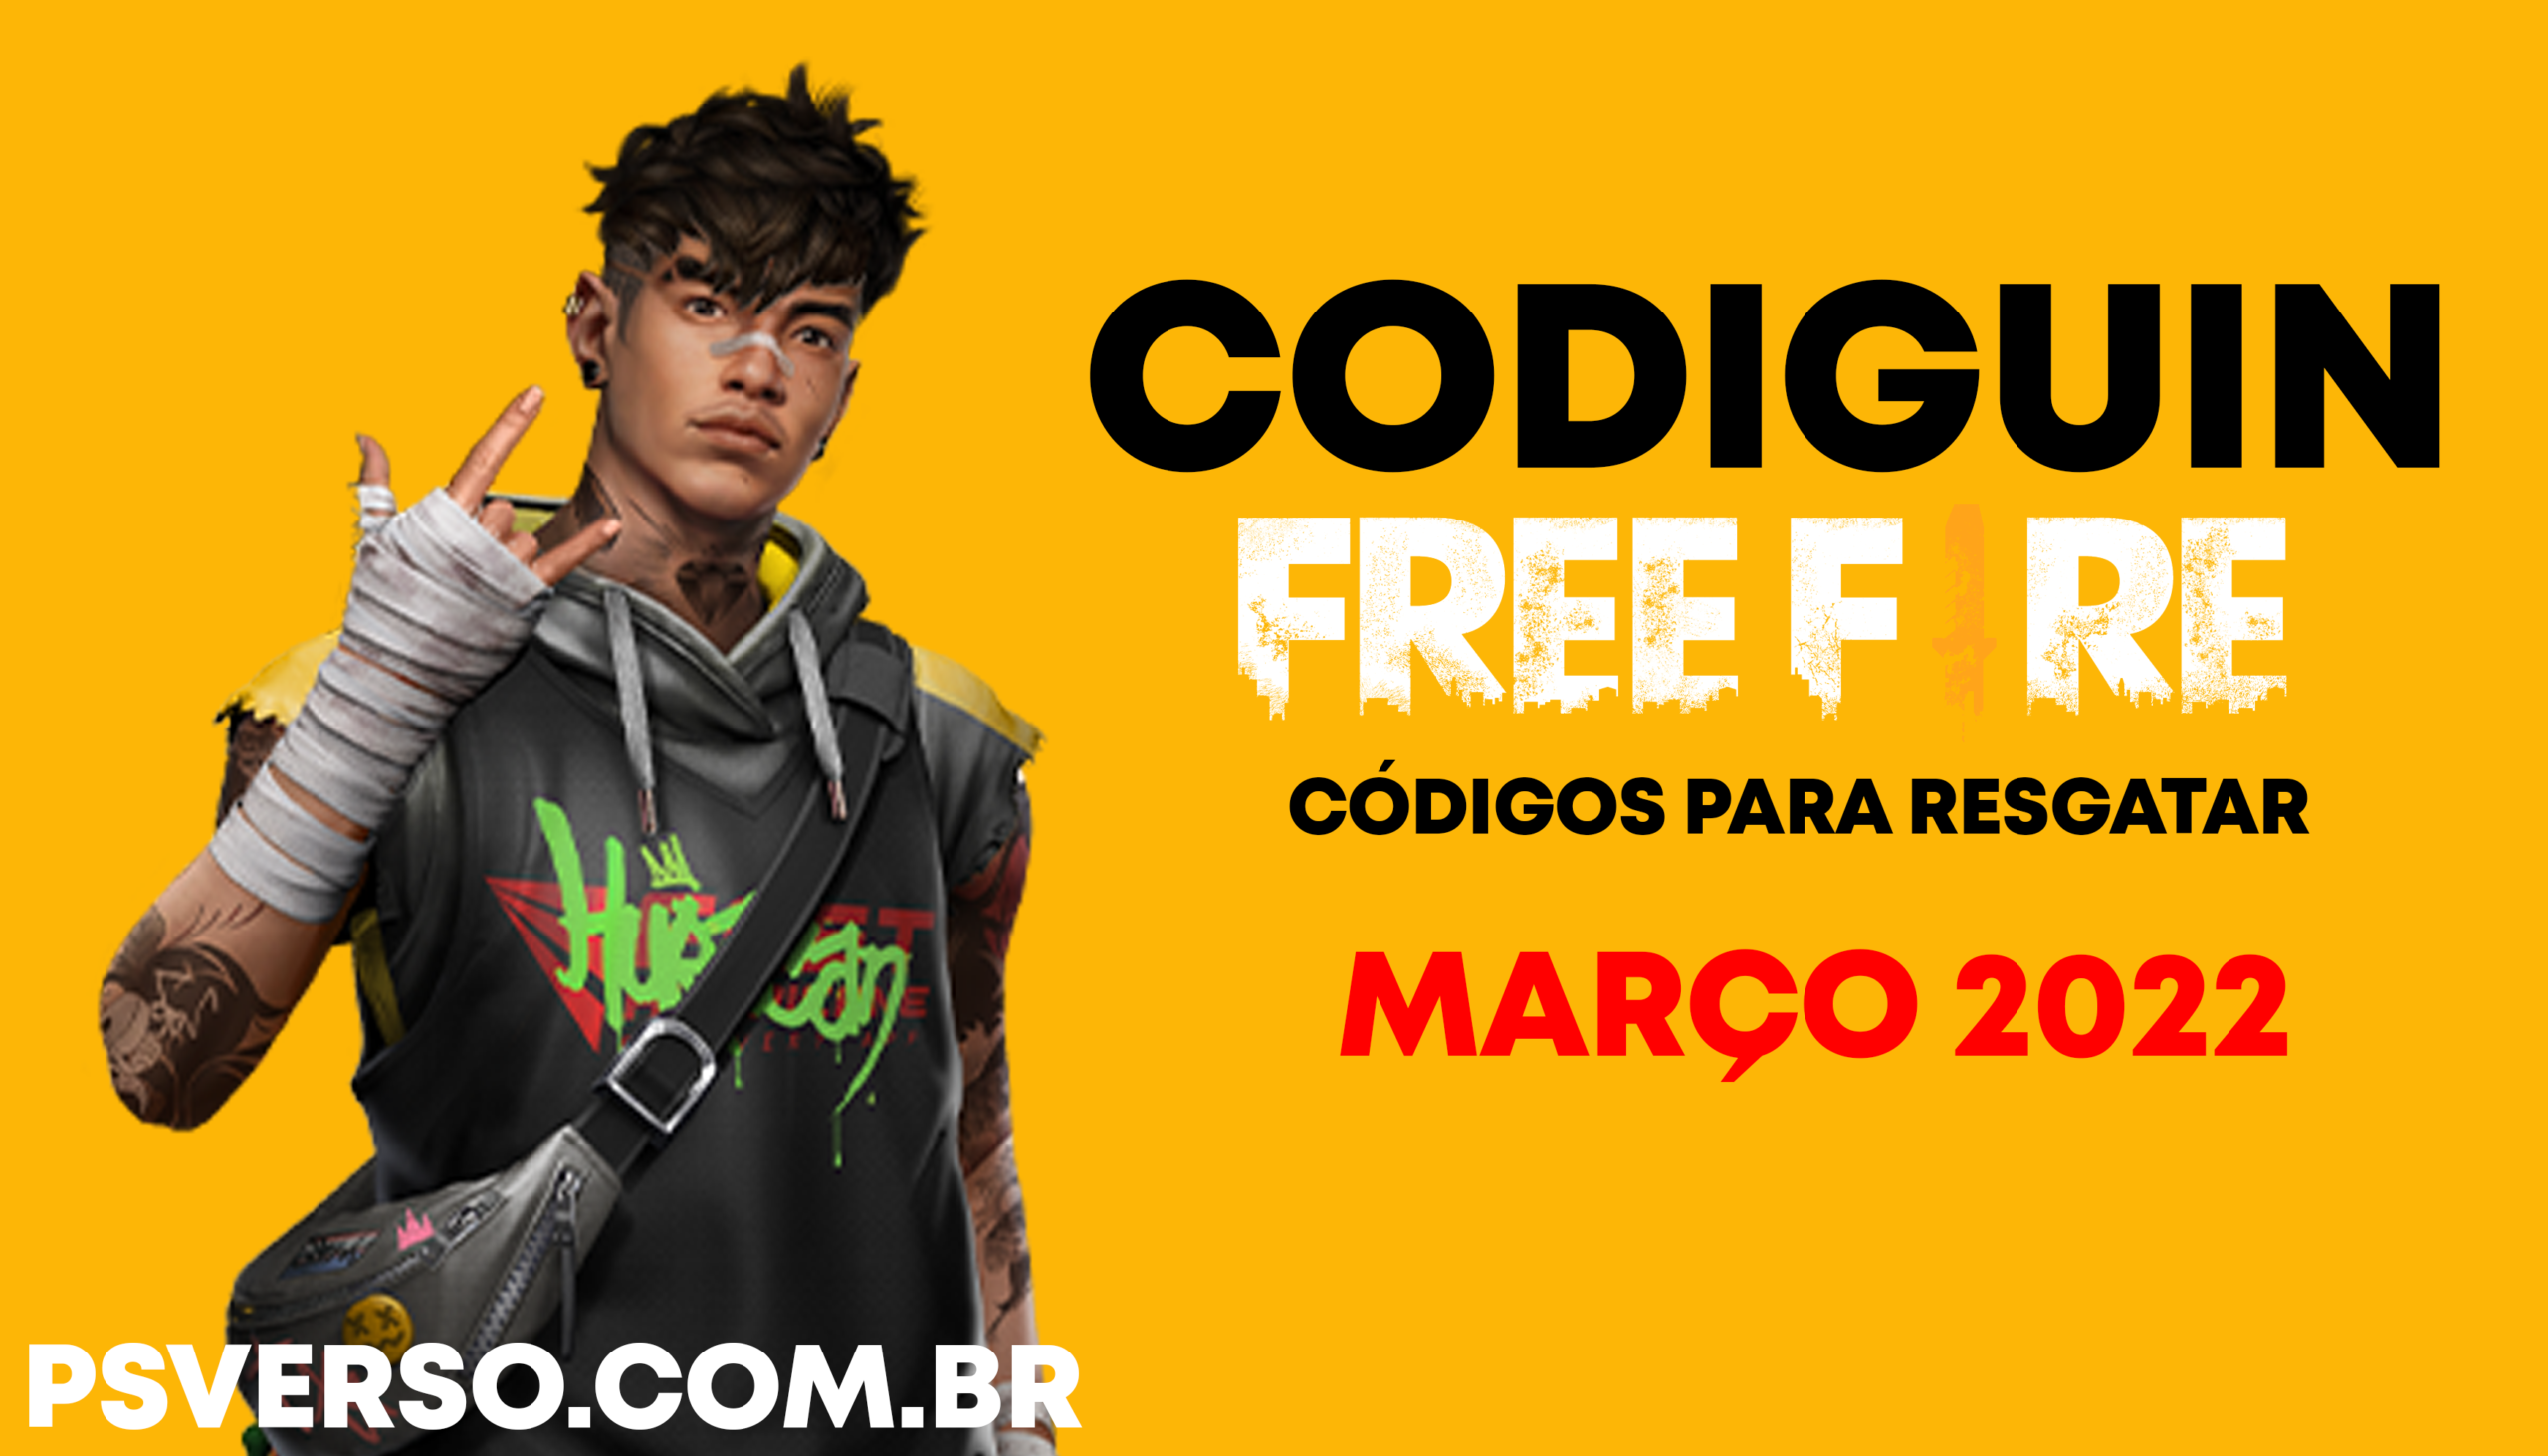 CODIGUIN FF 2022: códigos Free Fire ativos de 14 de fevereiro a 12 de março  - Free Fire Club